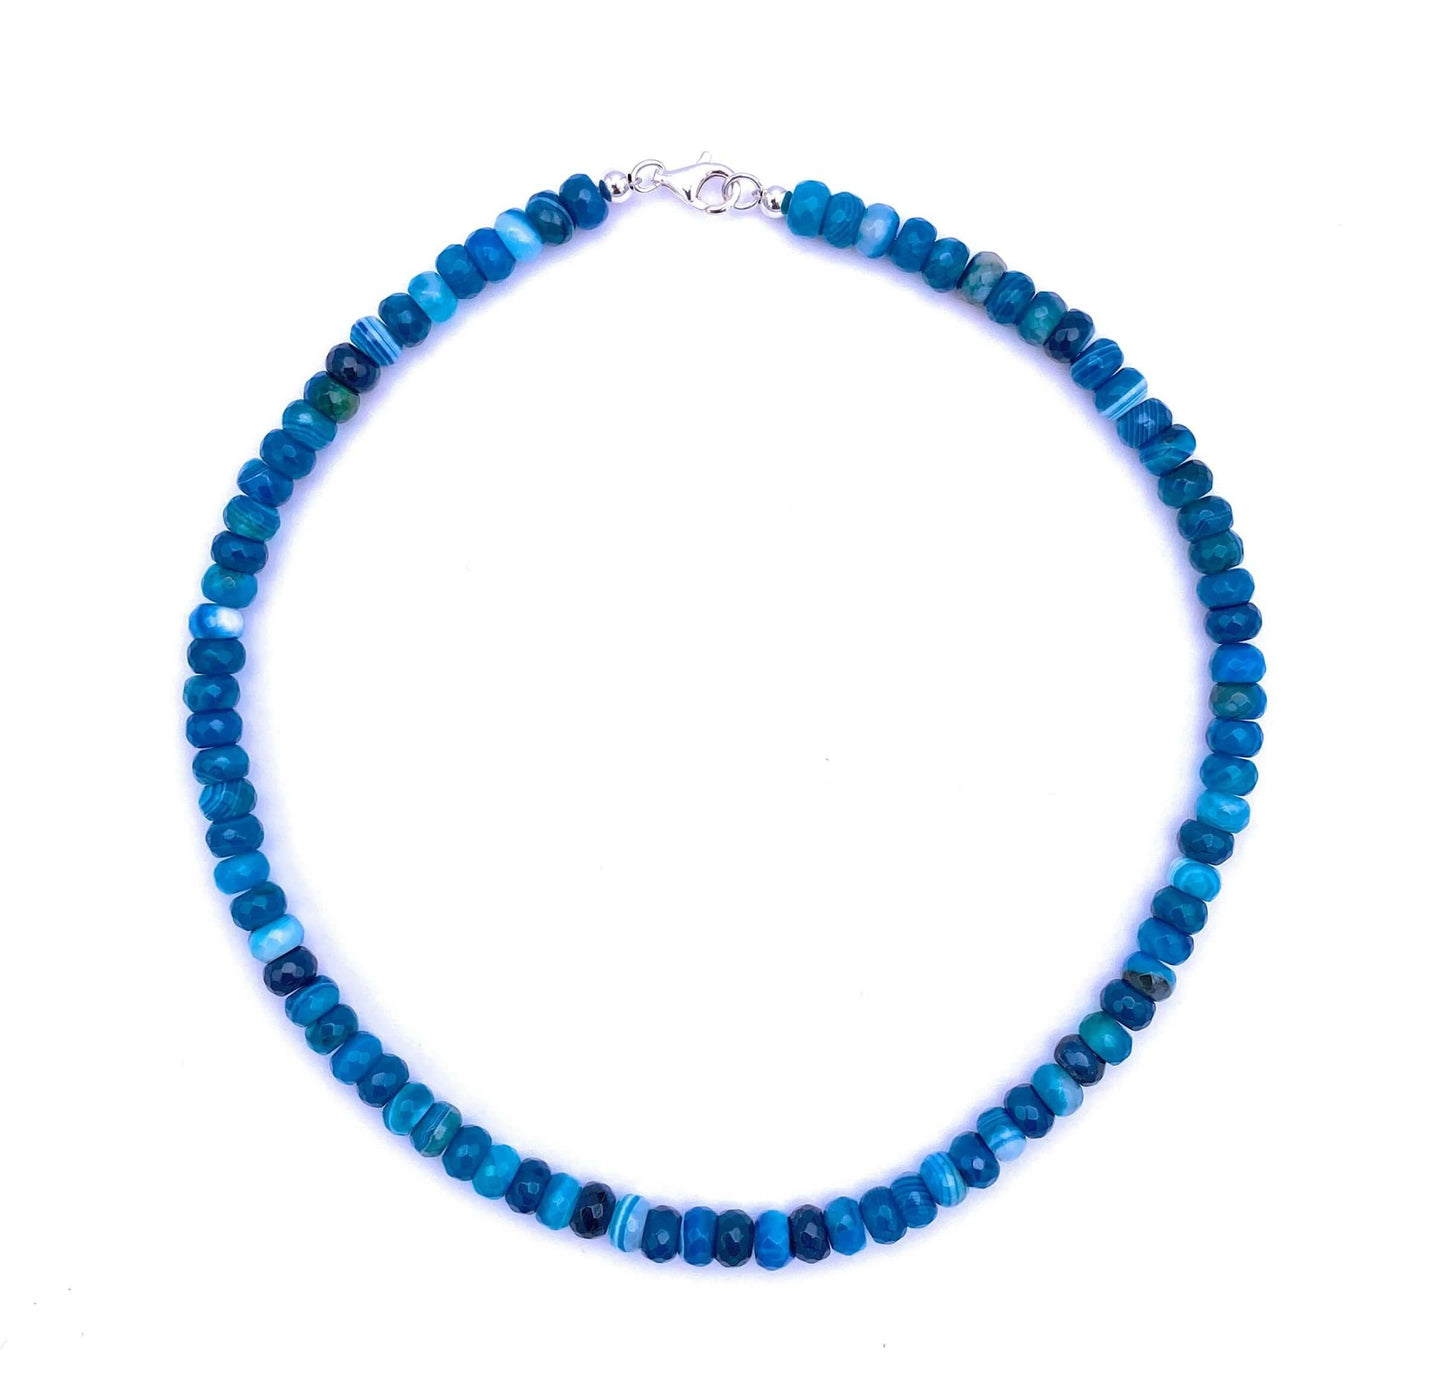 Blaue Achat Linsen Halskette 8mm